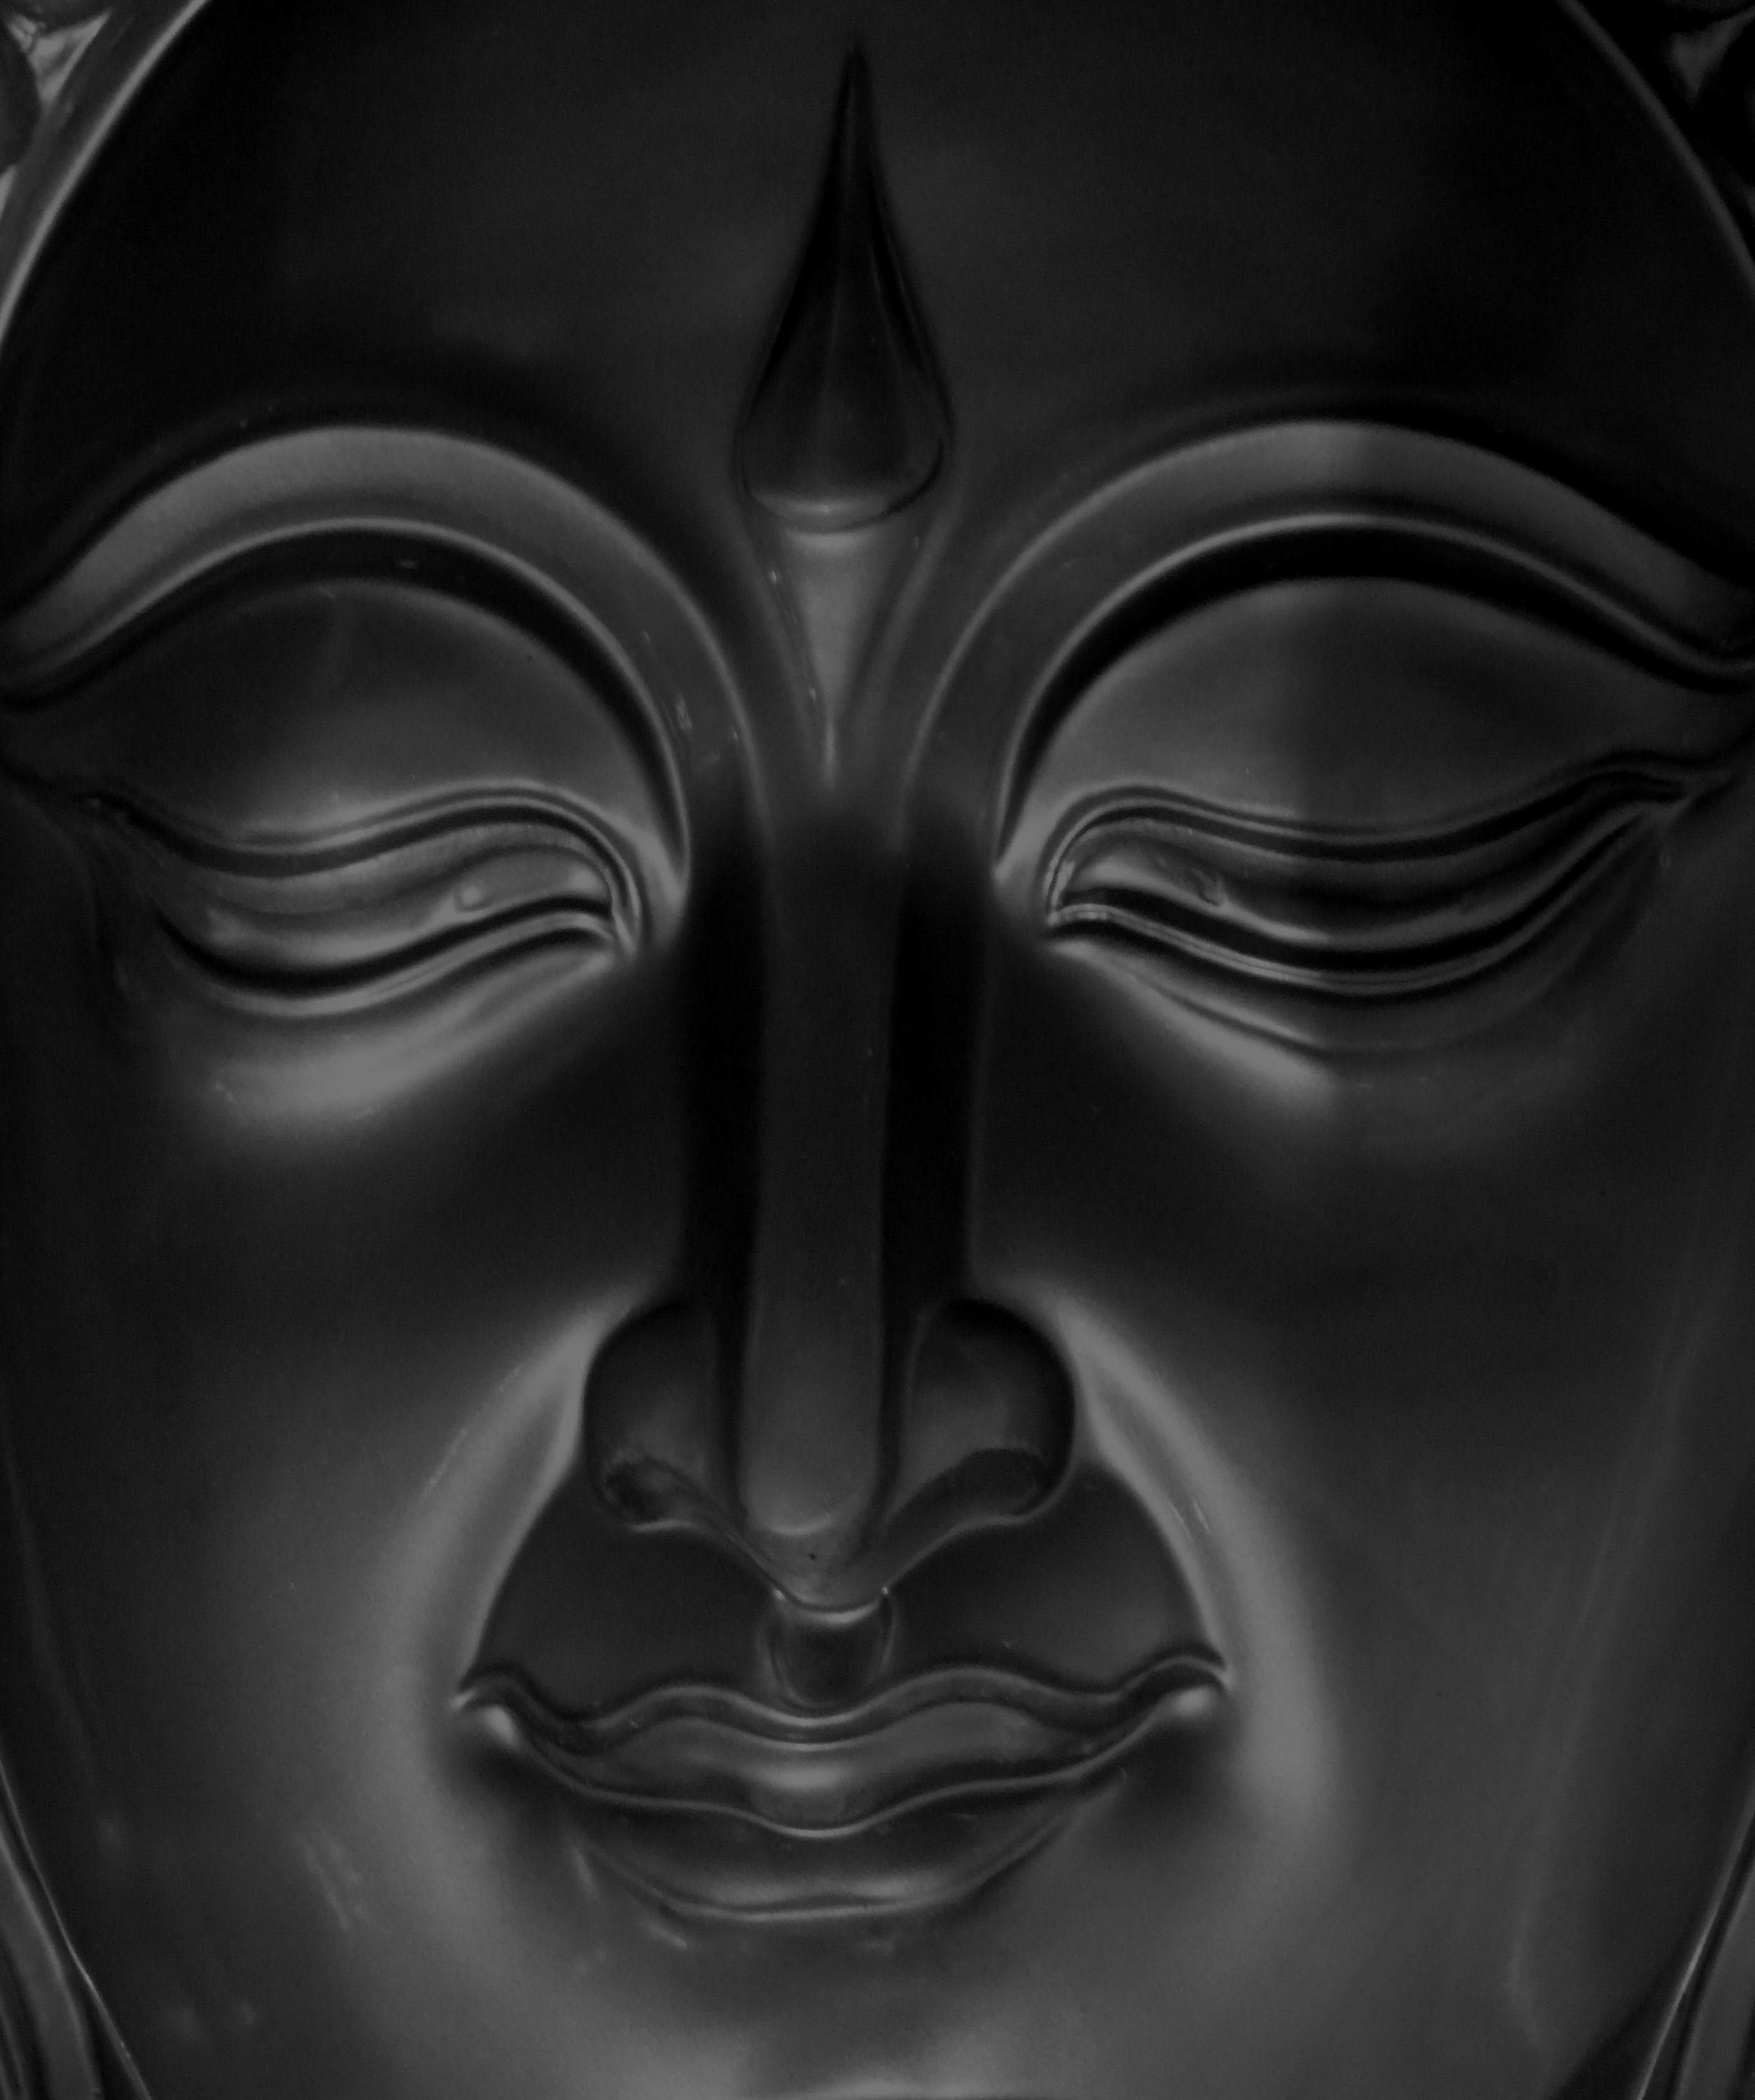 Buddha face photo